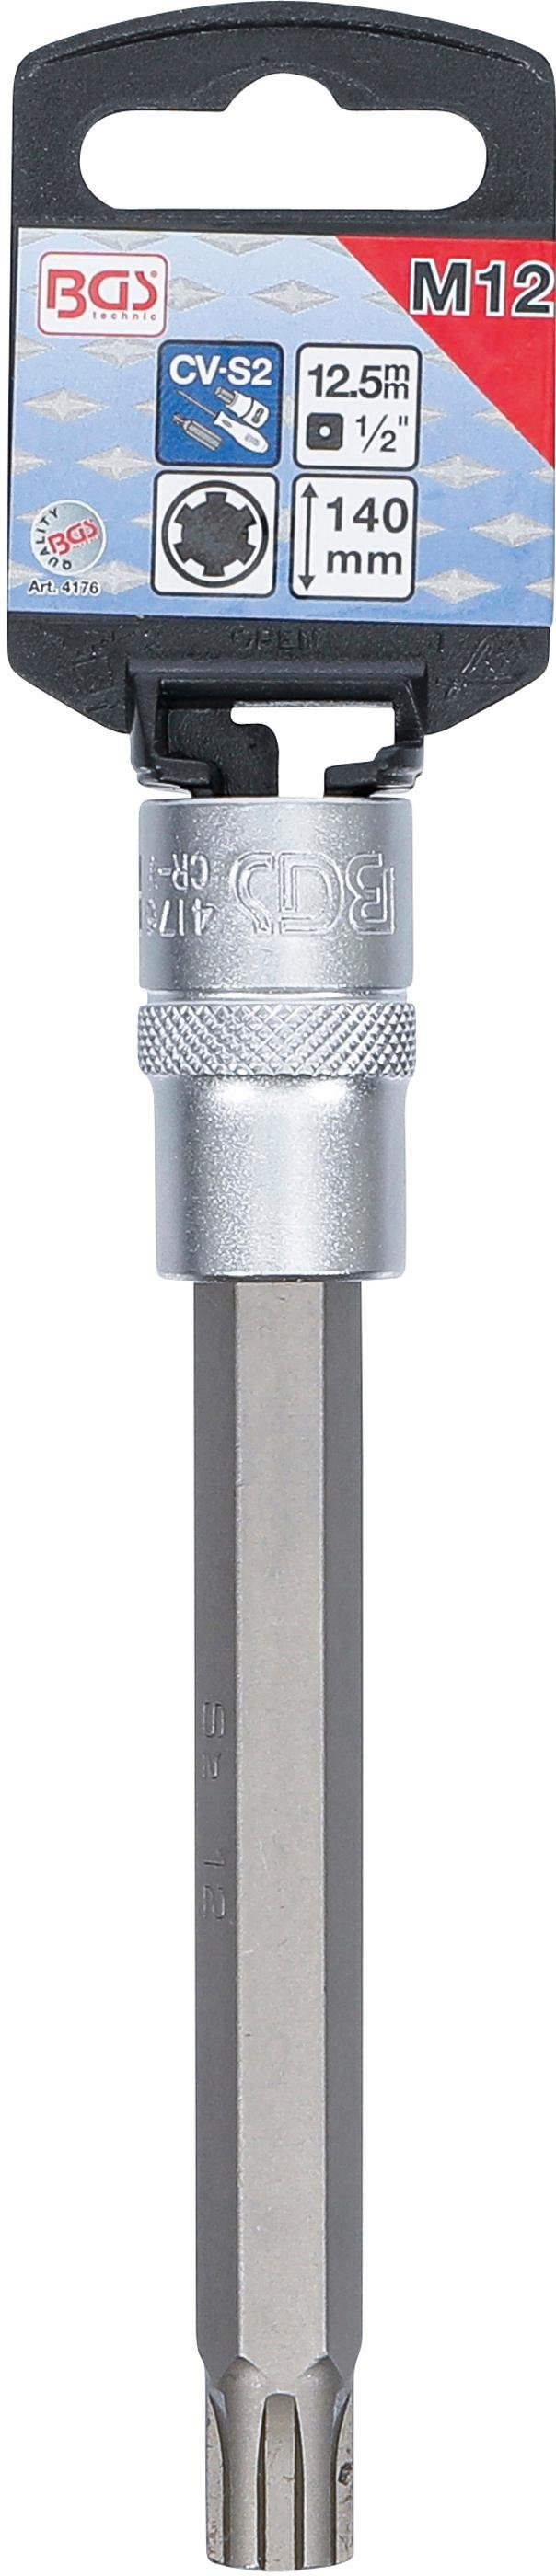 Keil-Profil 140 12,5 Antrieb (1/2), mm, technic Bit-Schraubendreher (für Innenvierkant BGS Bit-Einsatz, M12 Länge RIBE) mm